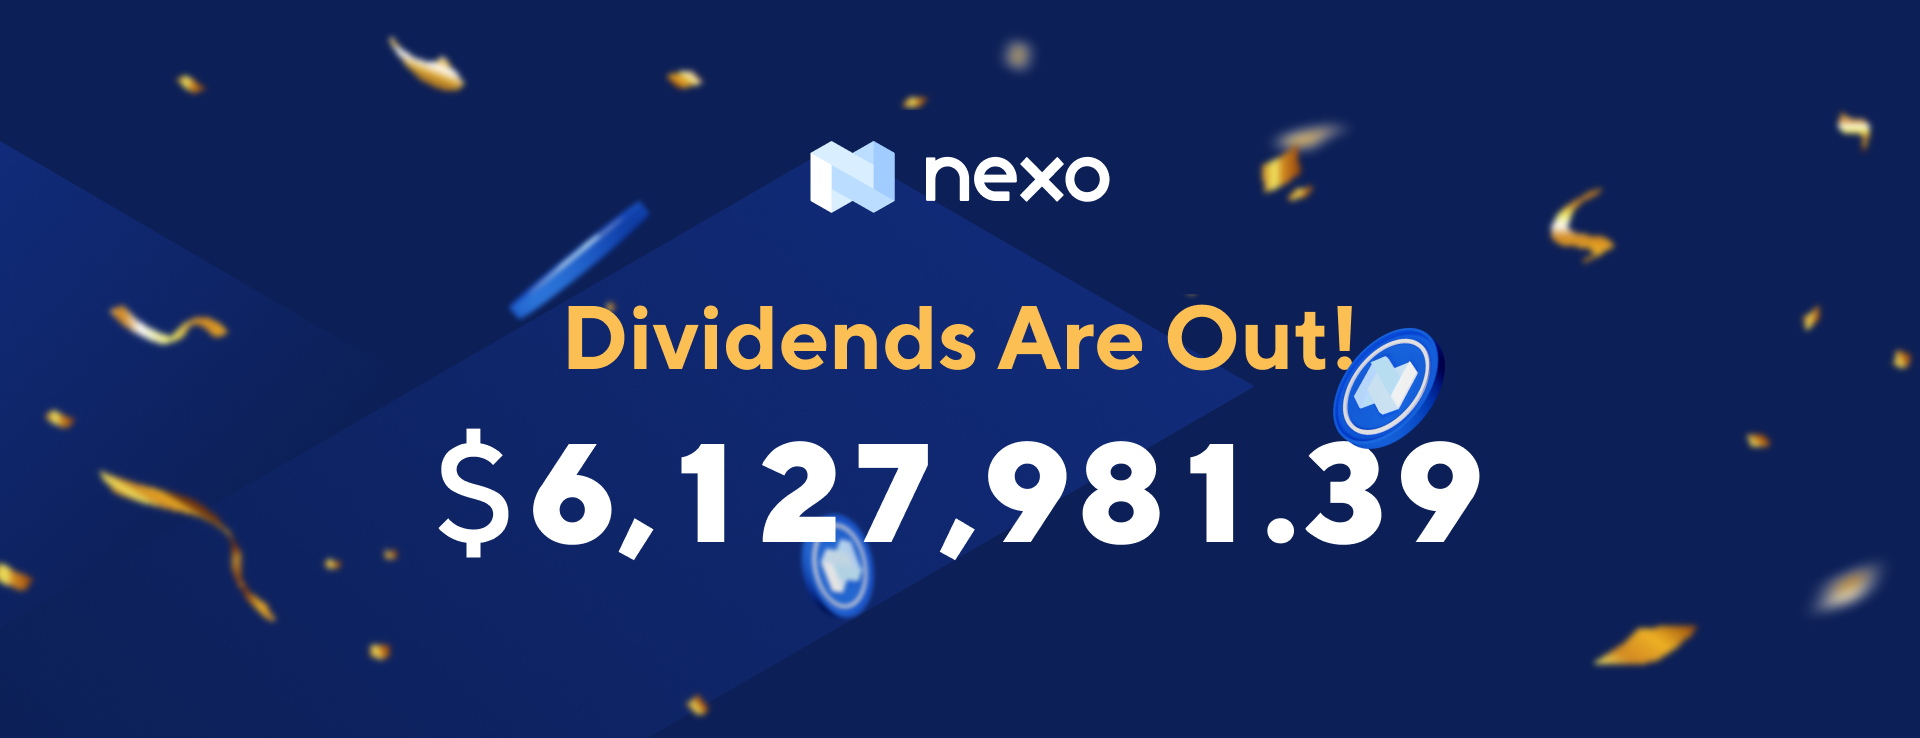 NEXO Token Holders Receive $6,127,981.39 in Dividends